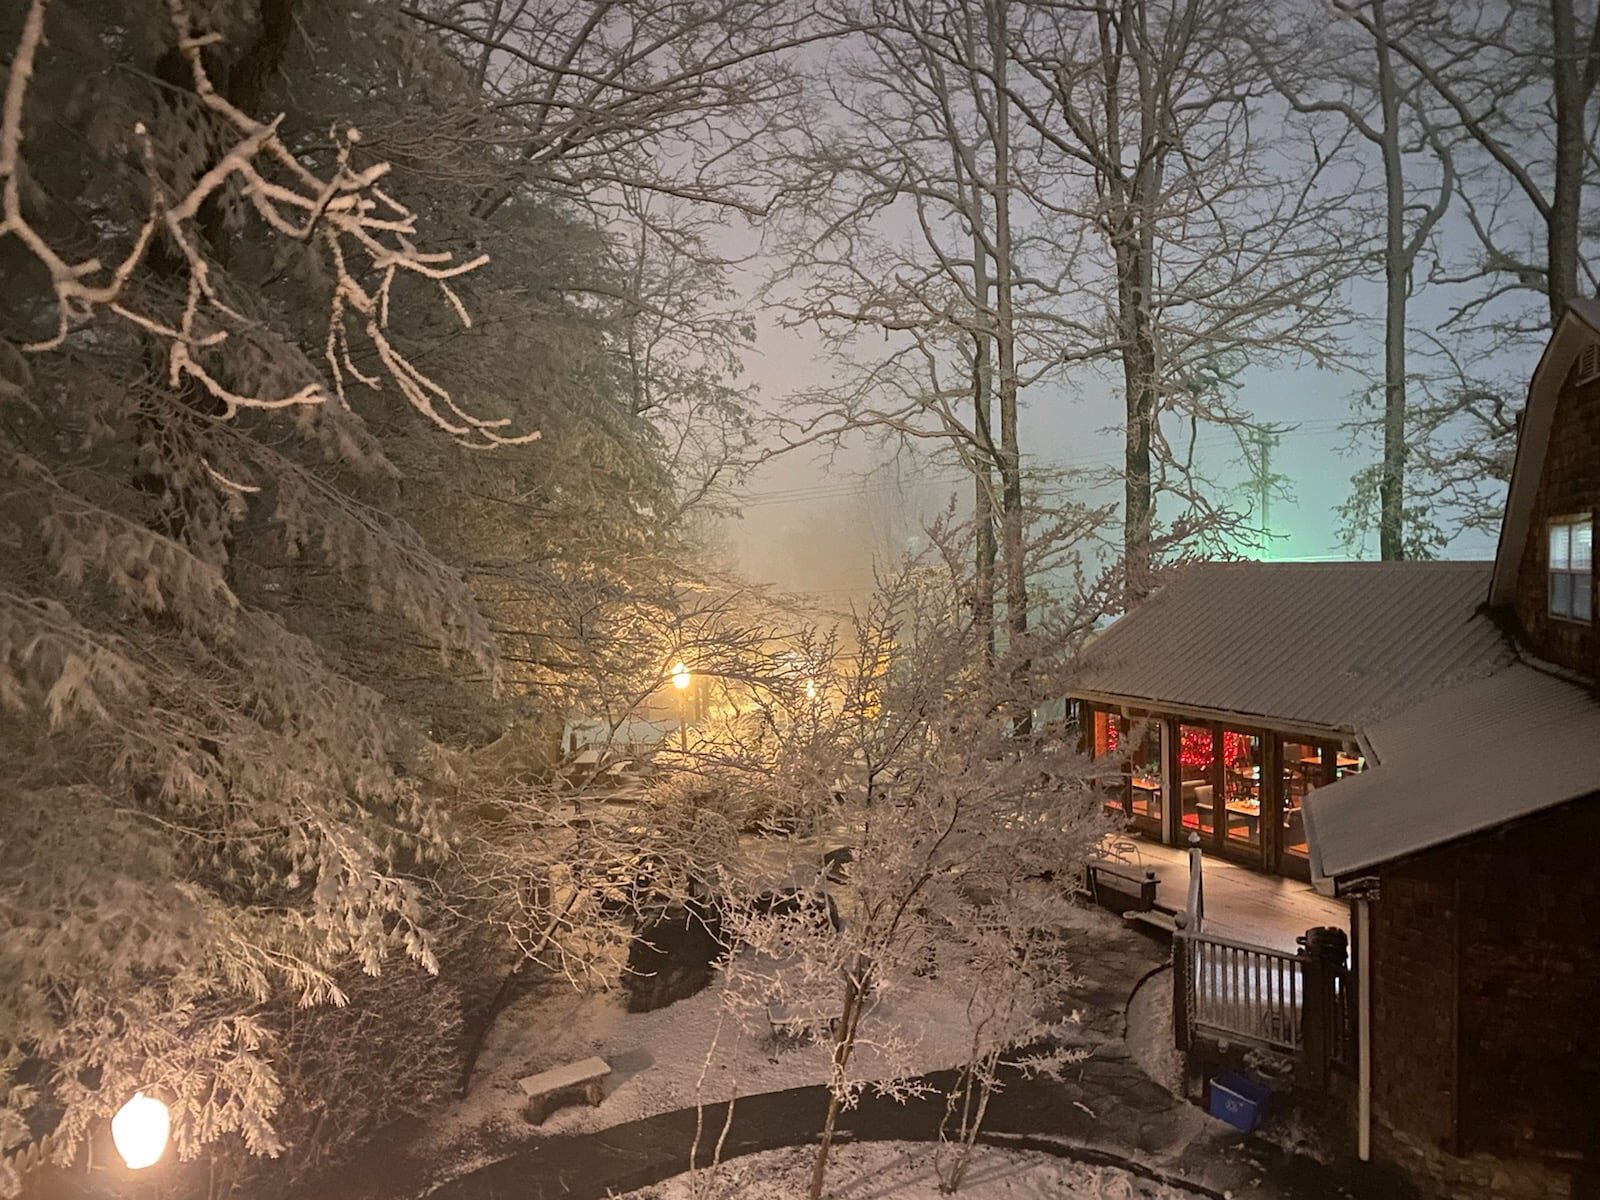 Snowfall on the inn on Christmas eve